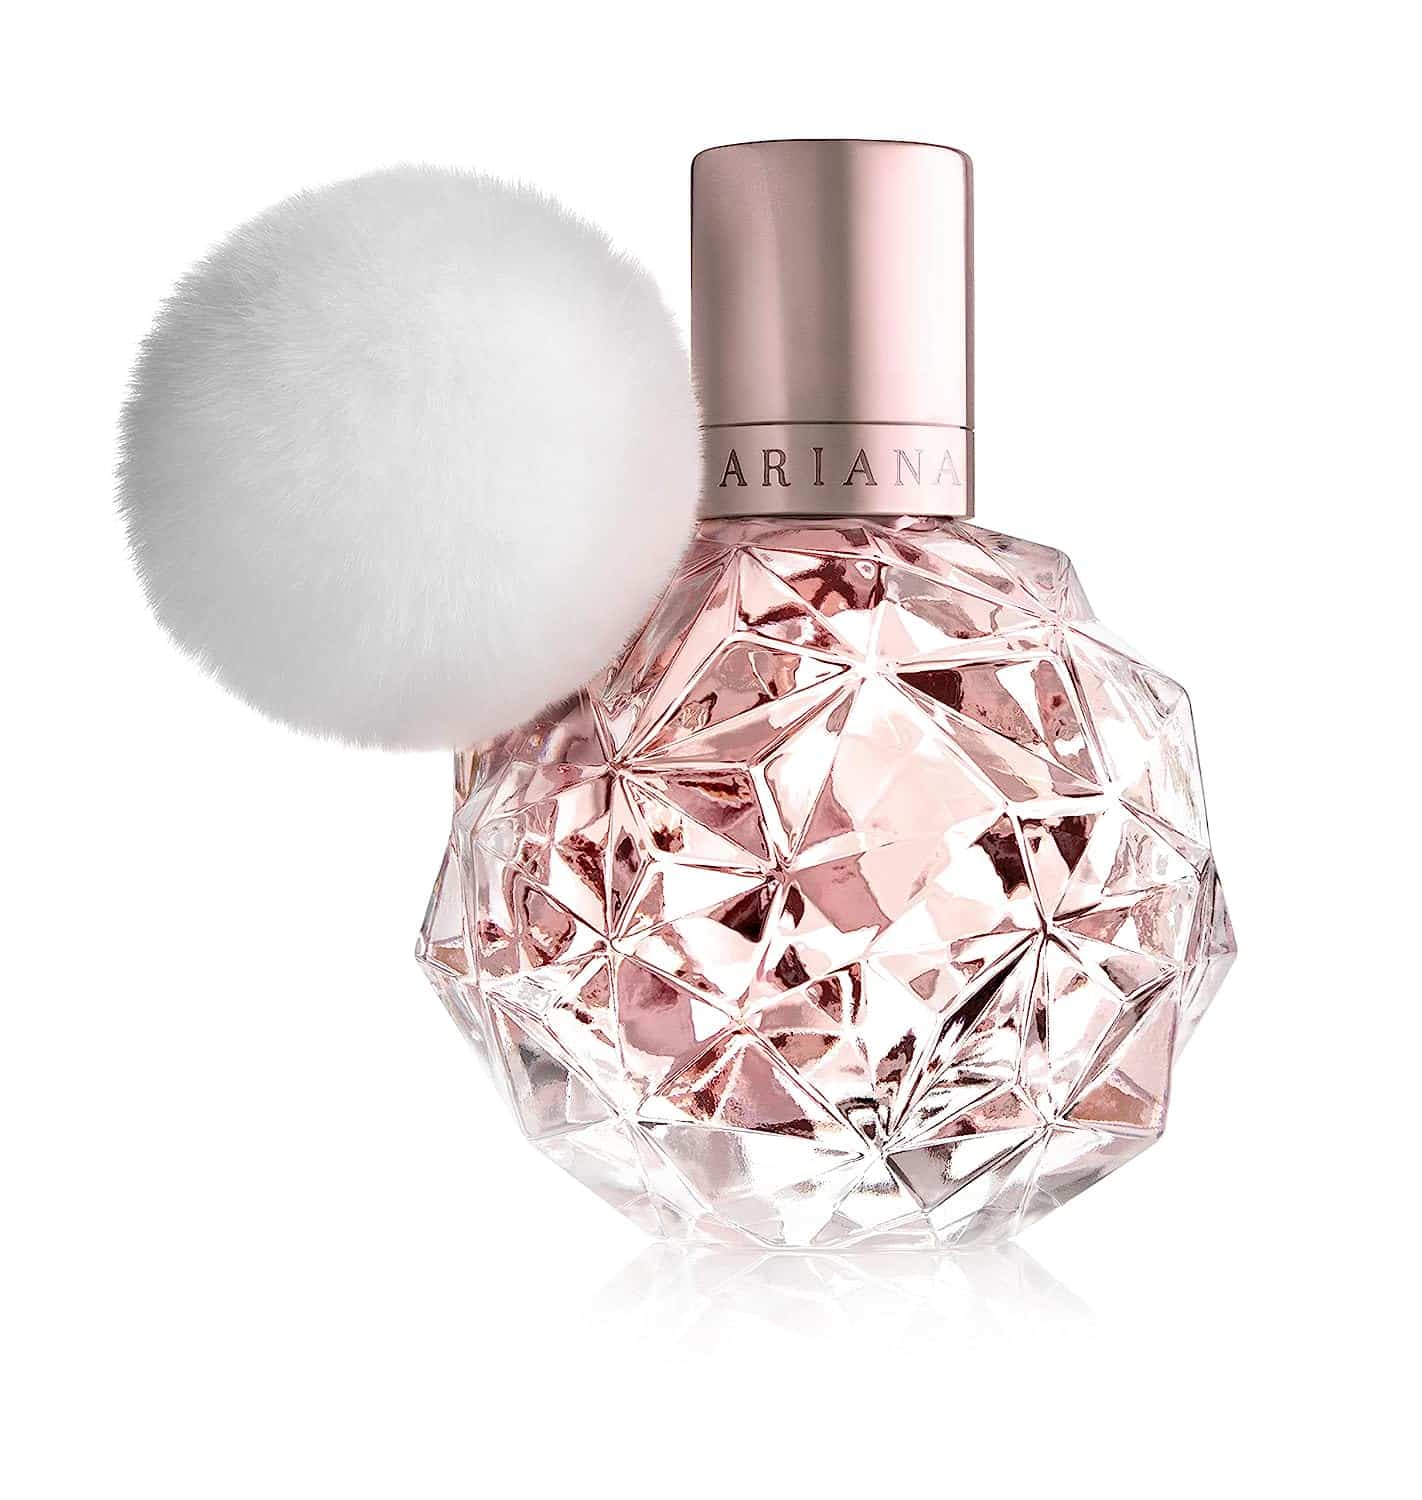 Ariana perfume